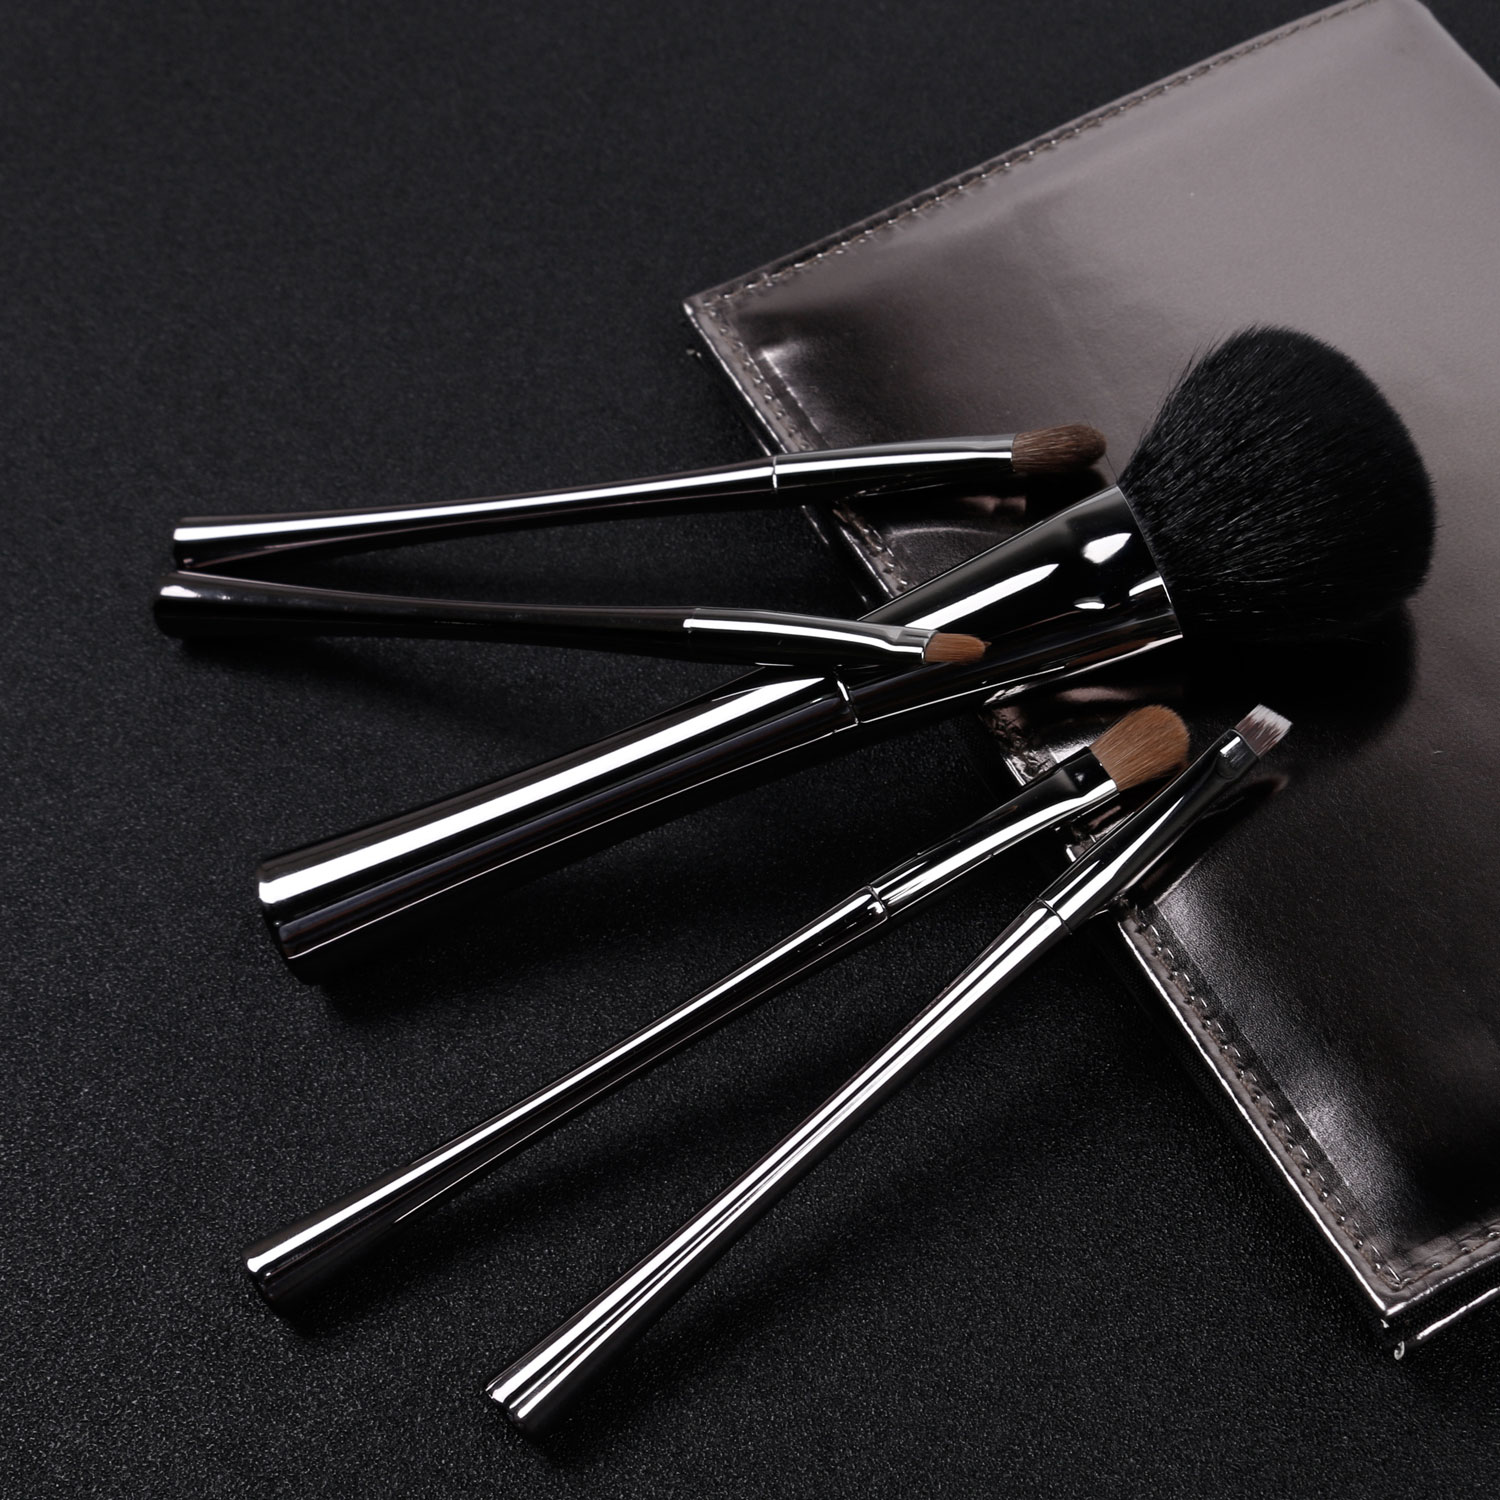 6 Pieces Portable Makeup Brush Set